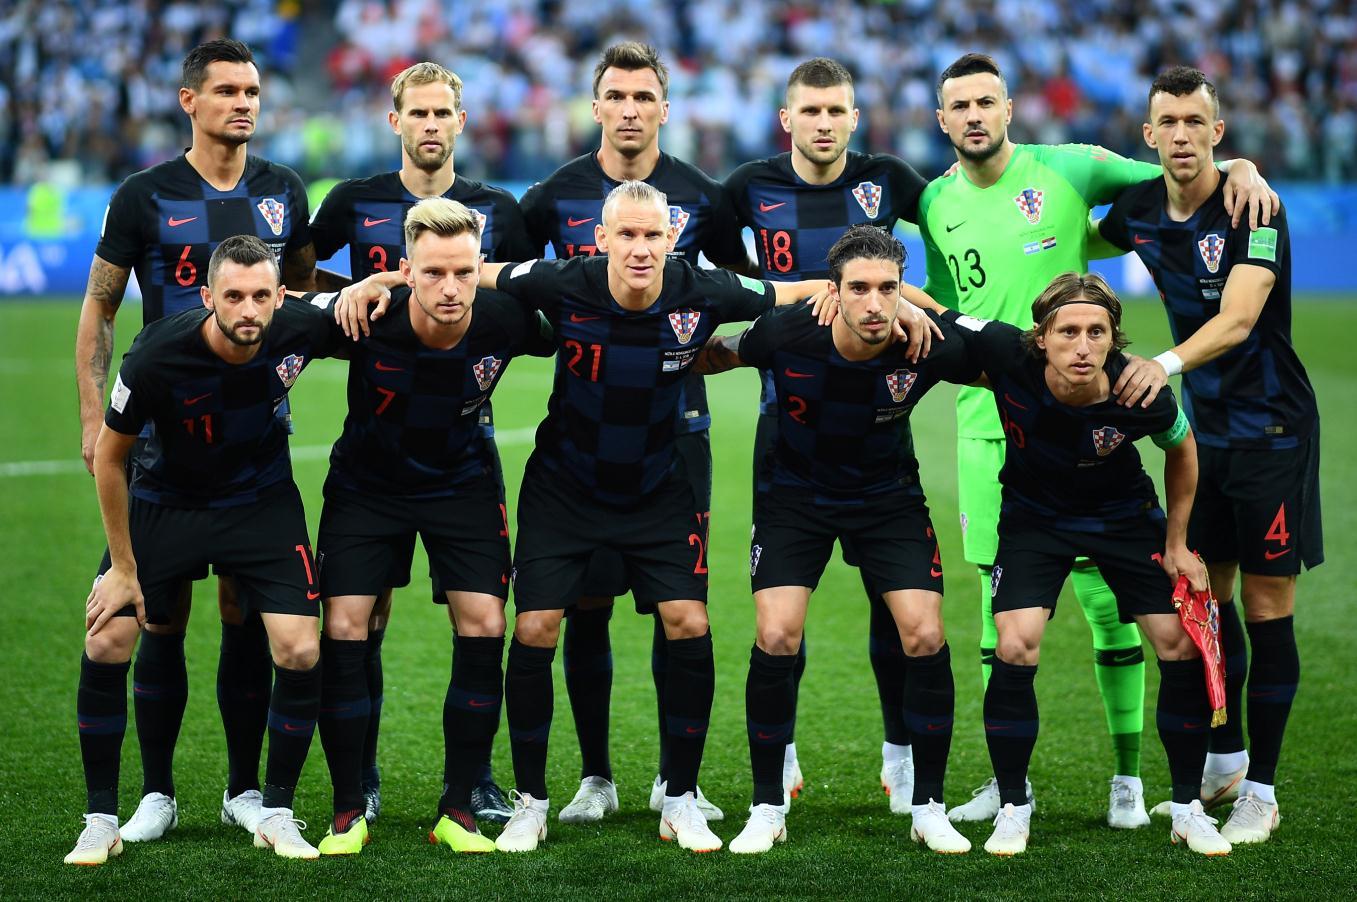 Šta se večeras treba dogoditi da Hrvatska prokocka prvo mjesto i historijsku priliku?